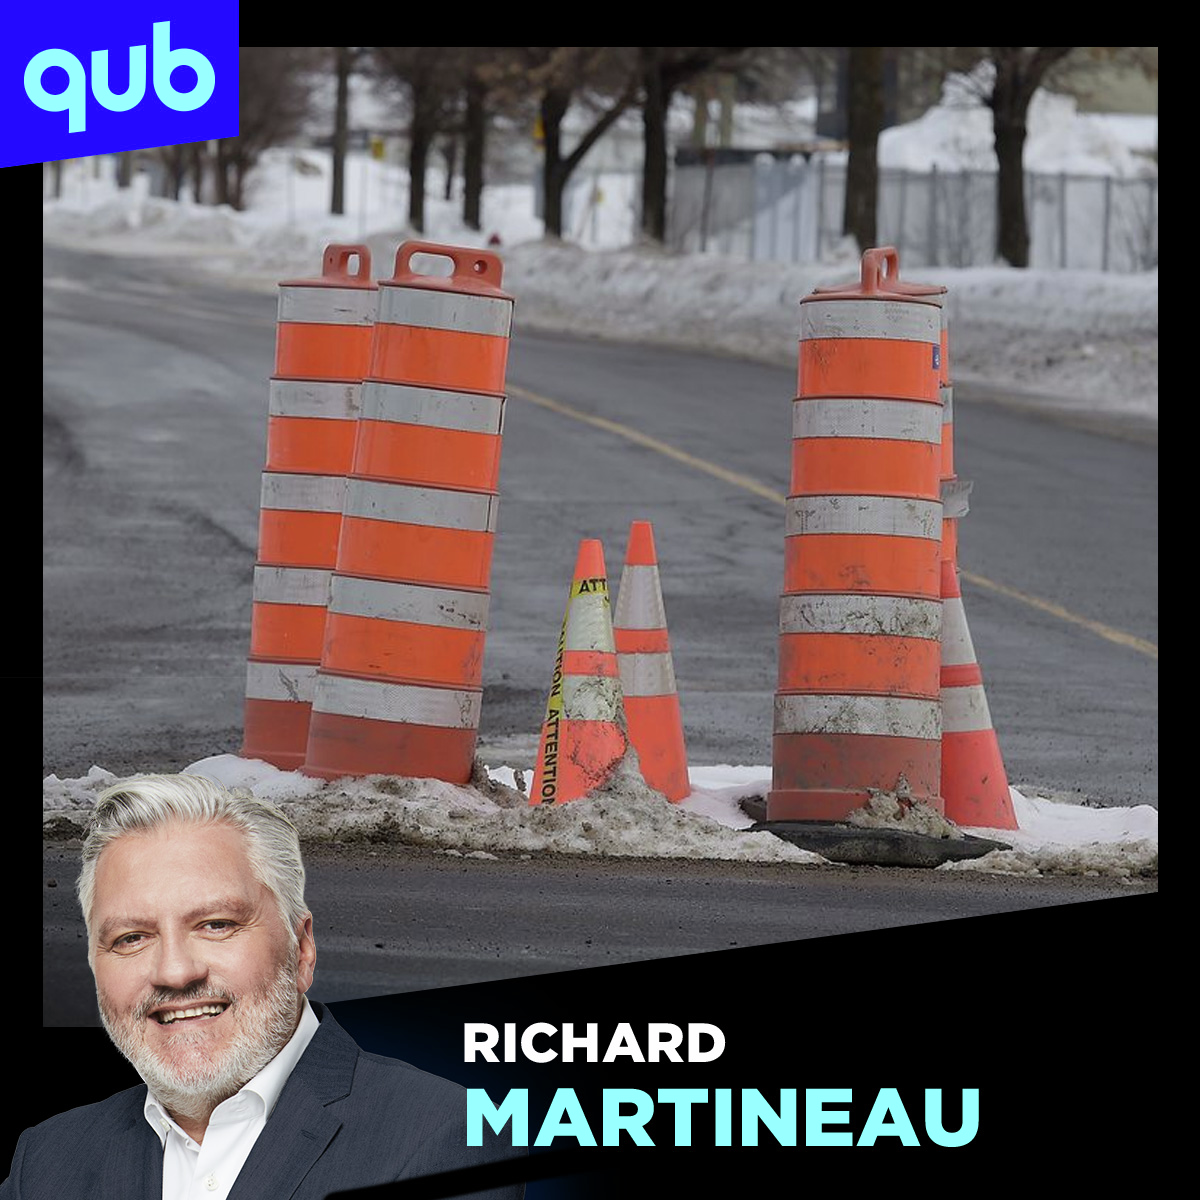 Montréal, capitale du crime et du cône orange!